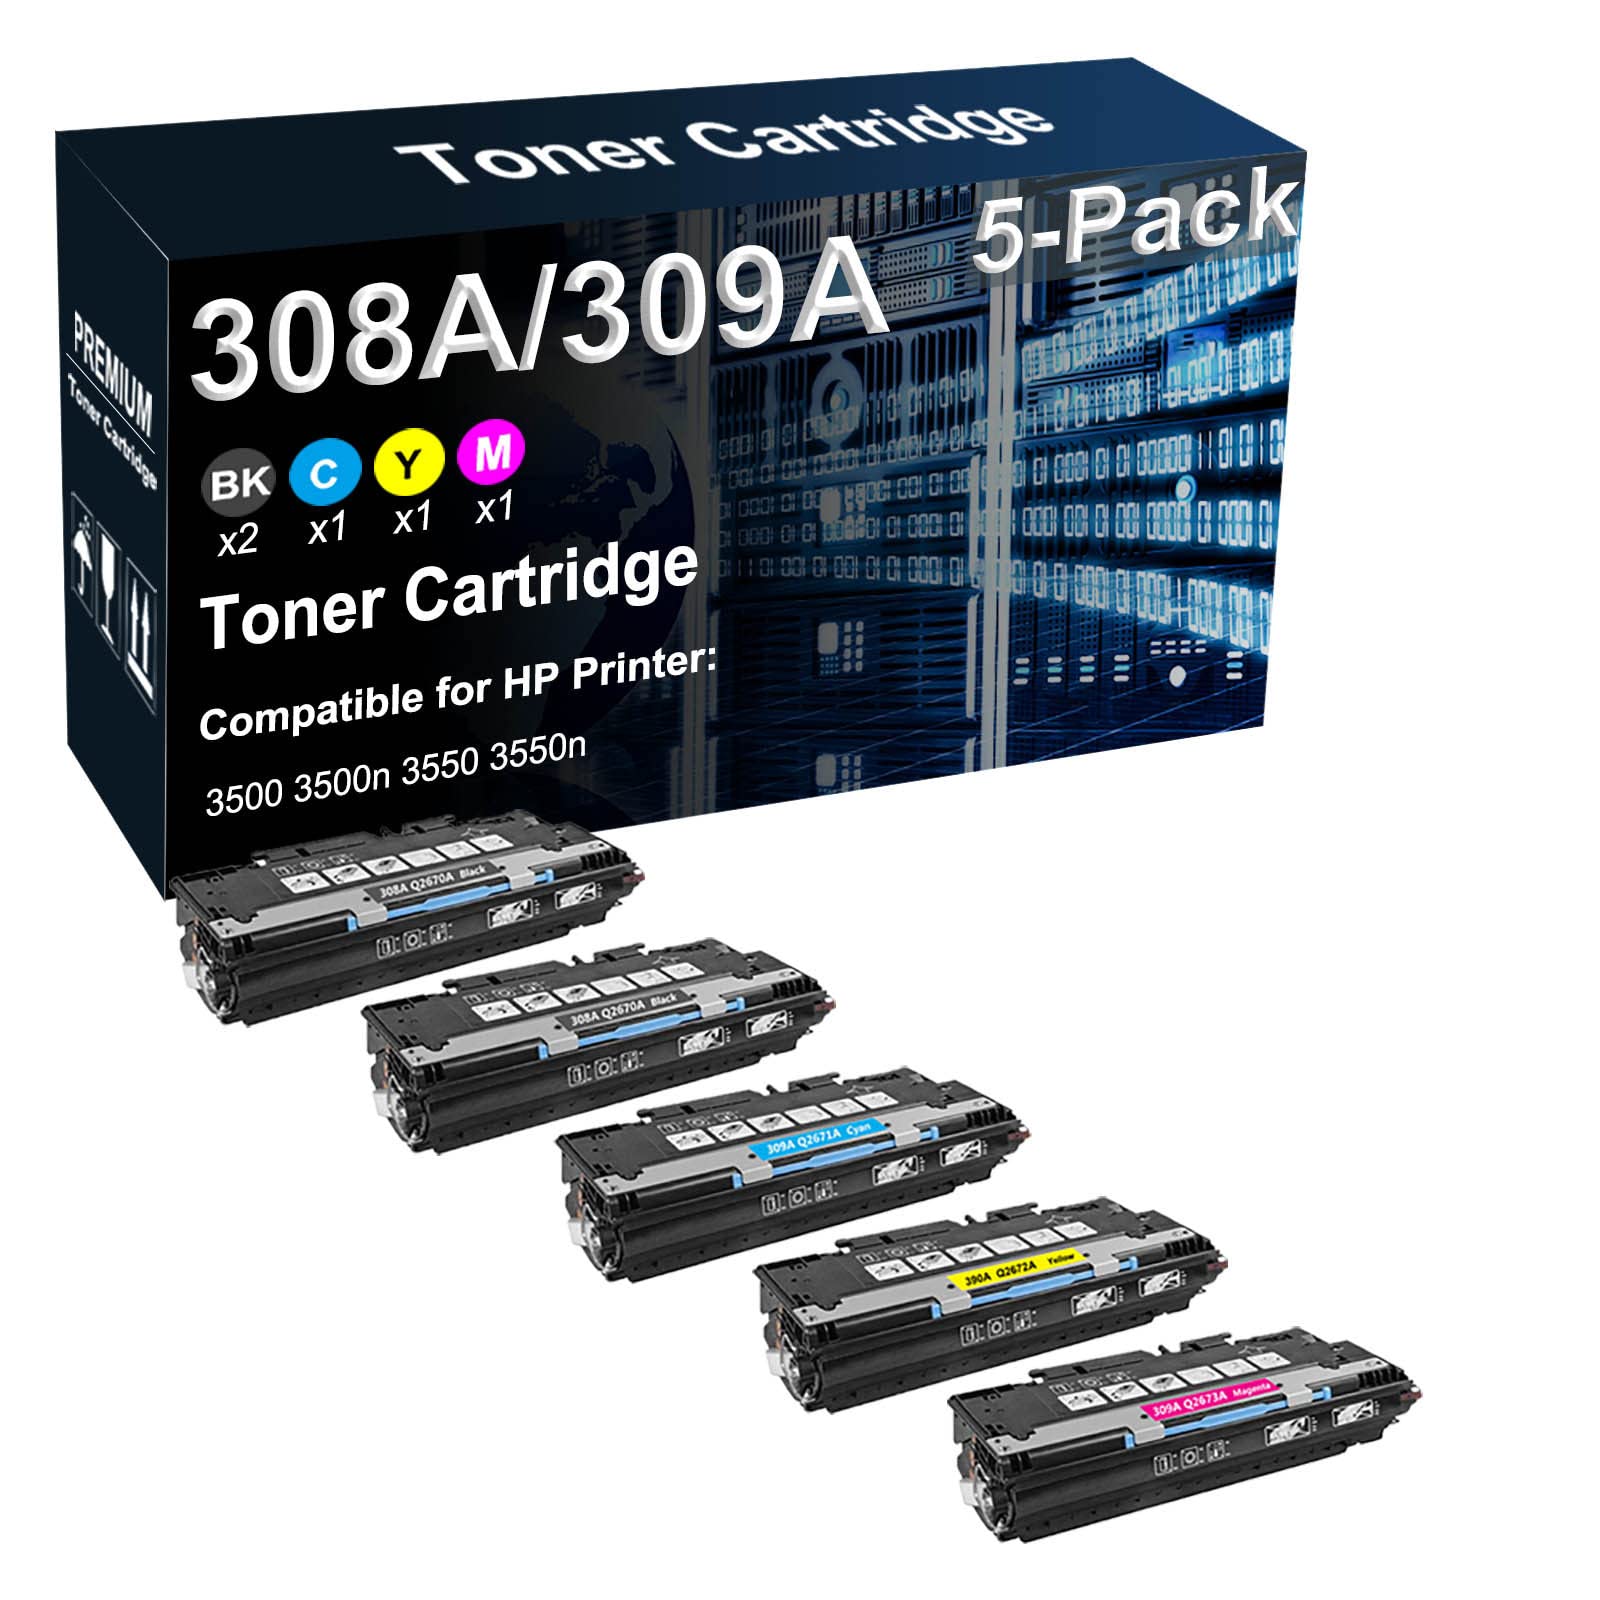 5-Pack (2BK+C+Y+M) Compatible High Capacity 308A 309A (Q2670A Q2671A Q2672A Q2673A) Laser Printer Cartridge Used for HP 3500 3500n 3550 3550n Printer